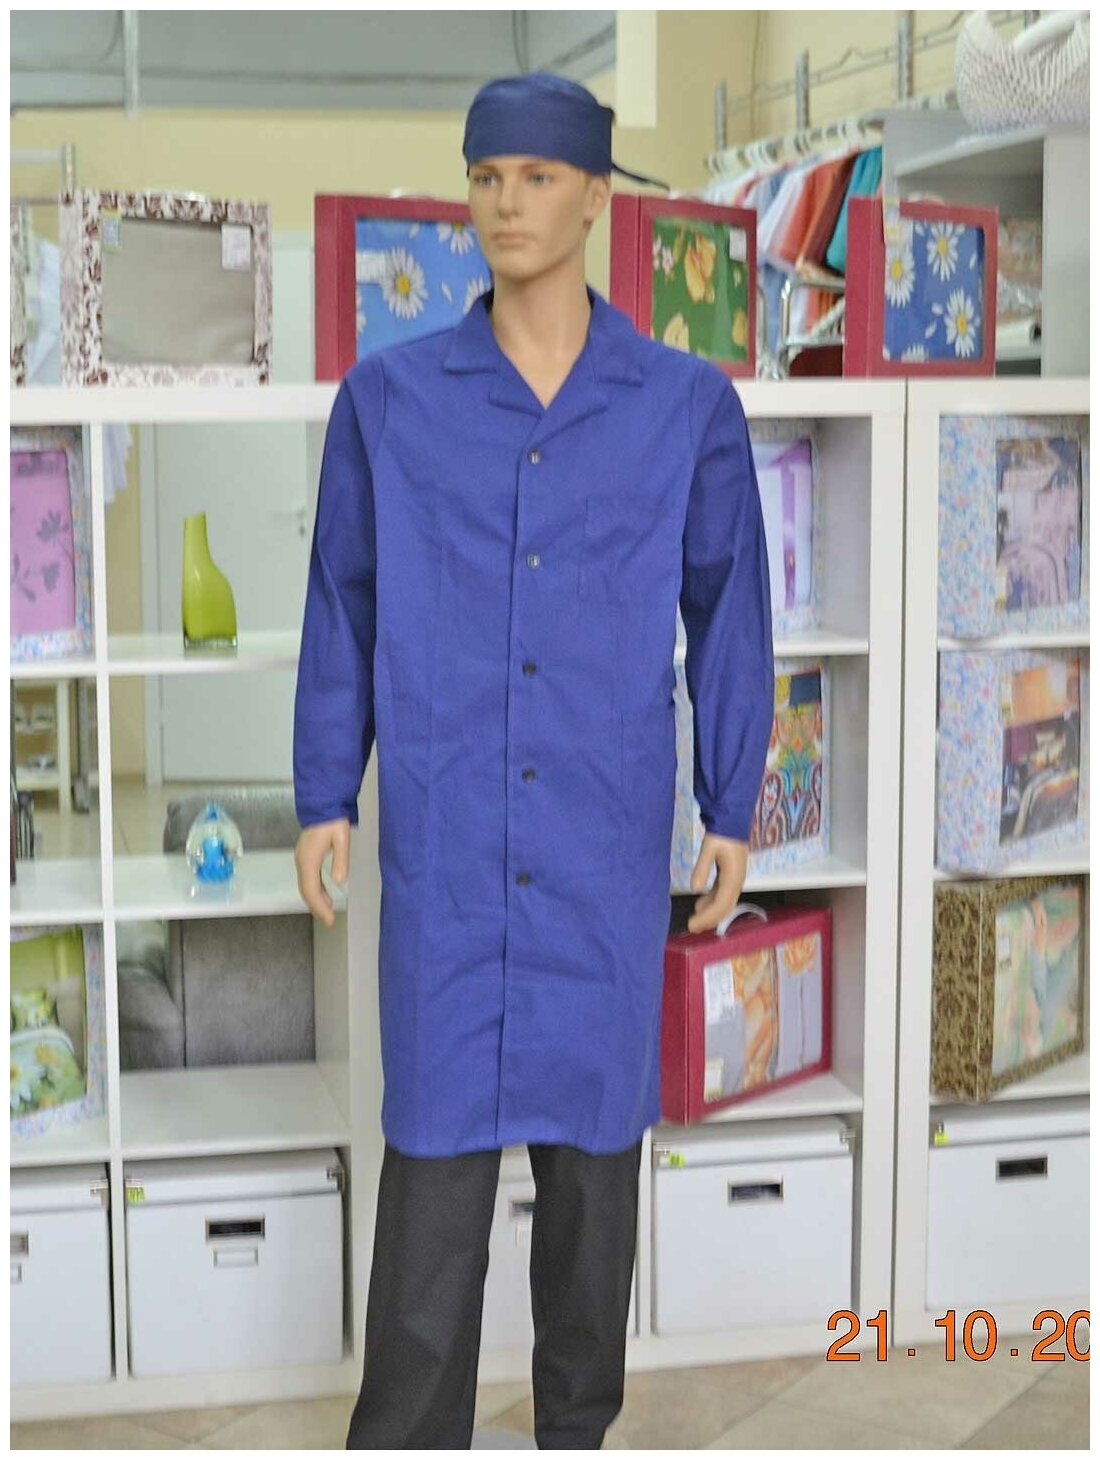 Халат для уроков труда и химии, производитель Фабрика швейных изделий №3, модель М-3, размер 36-38, цвет синий